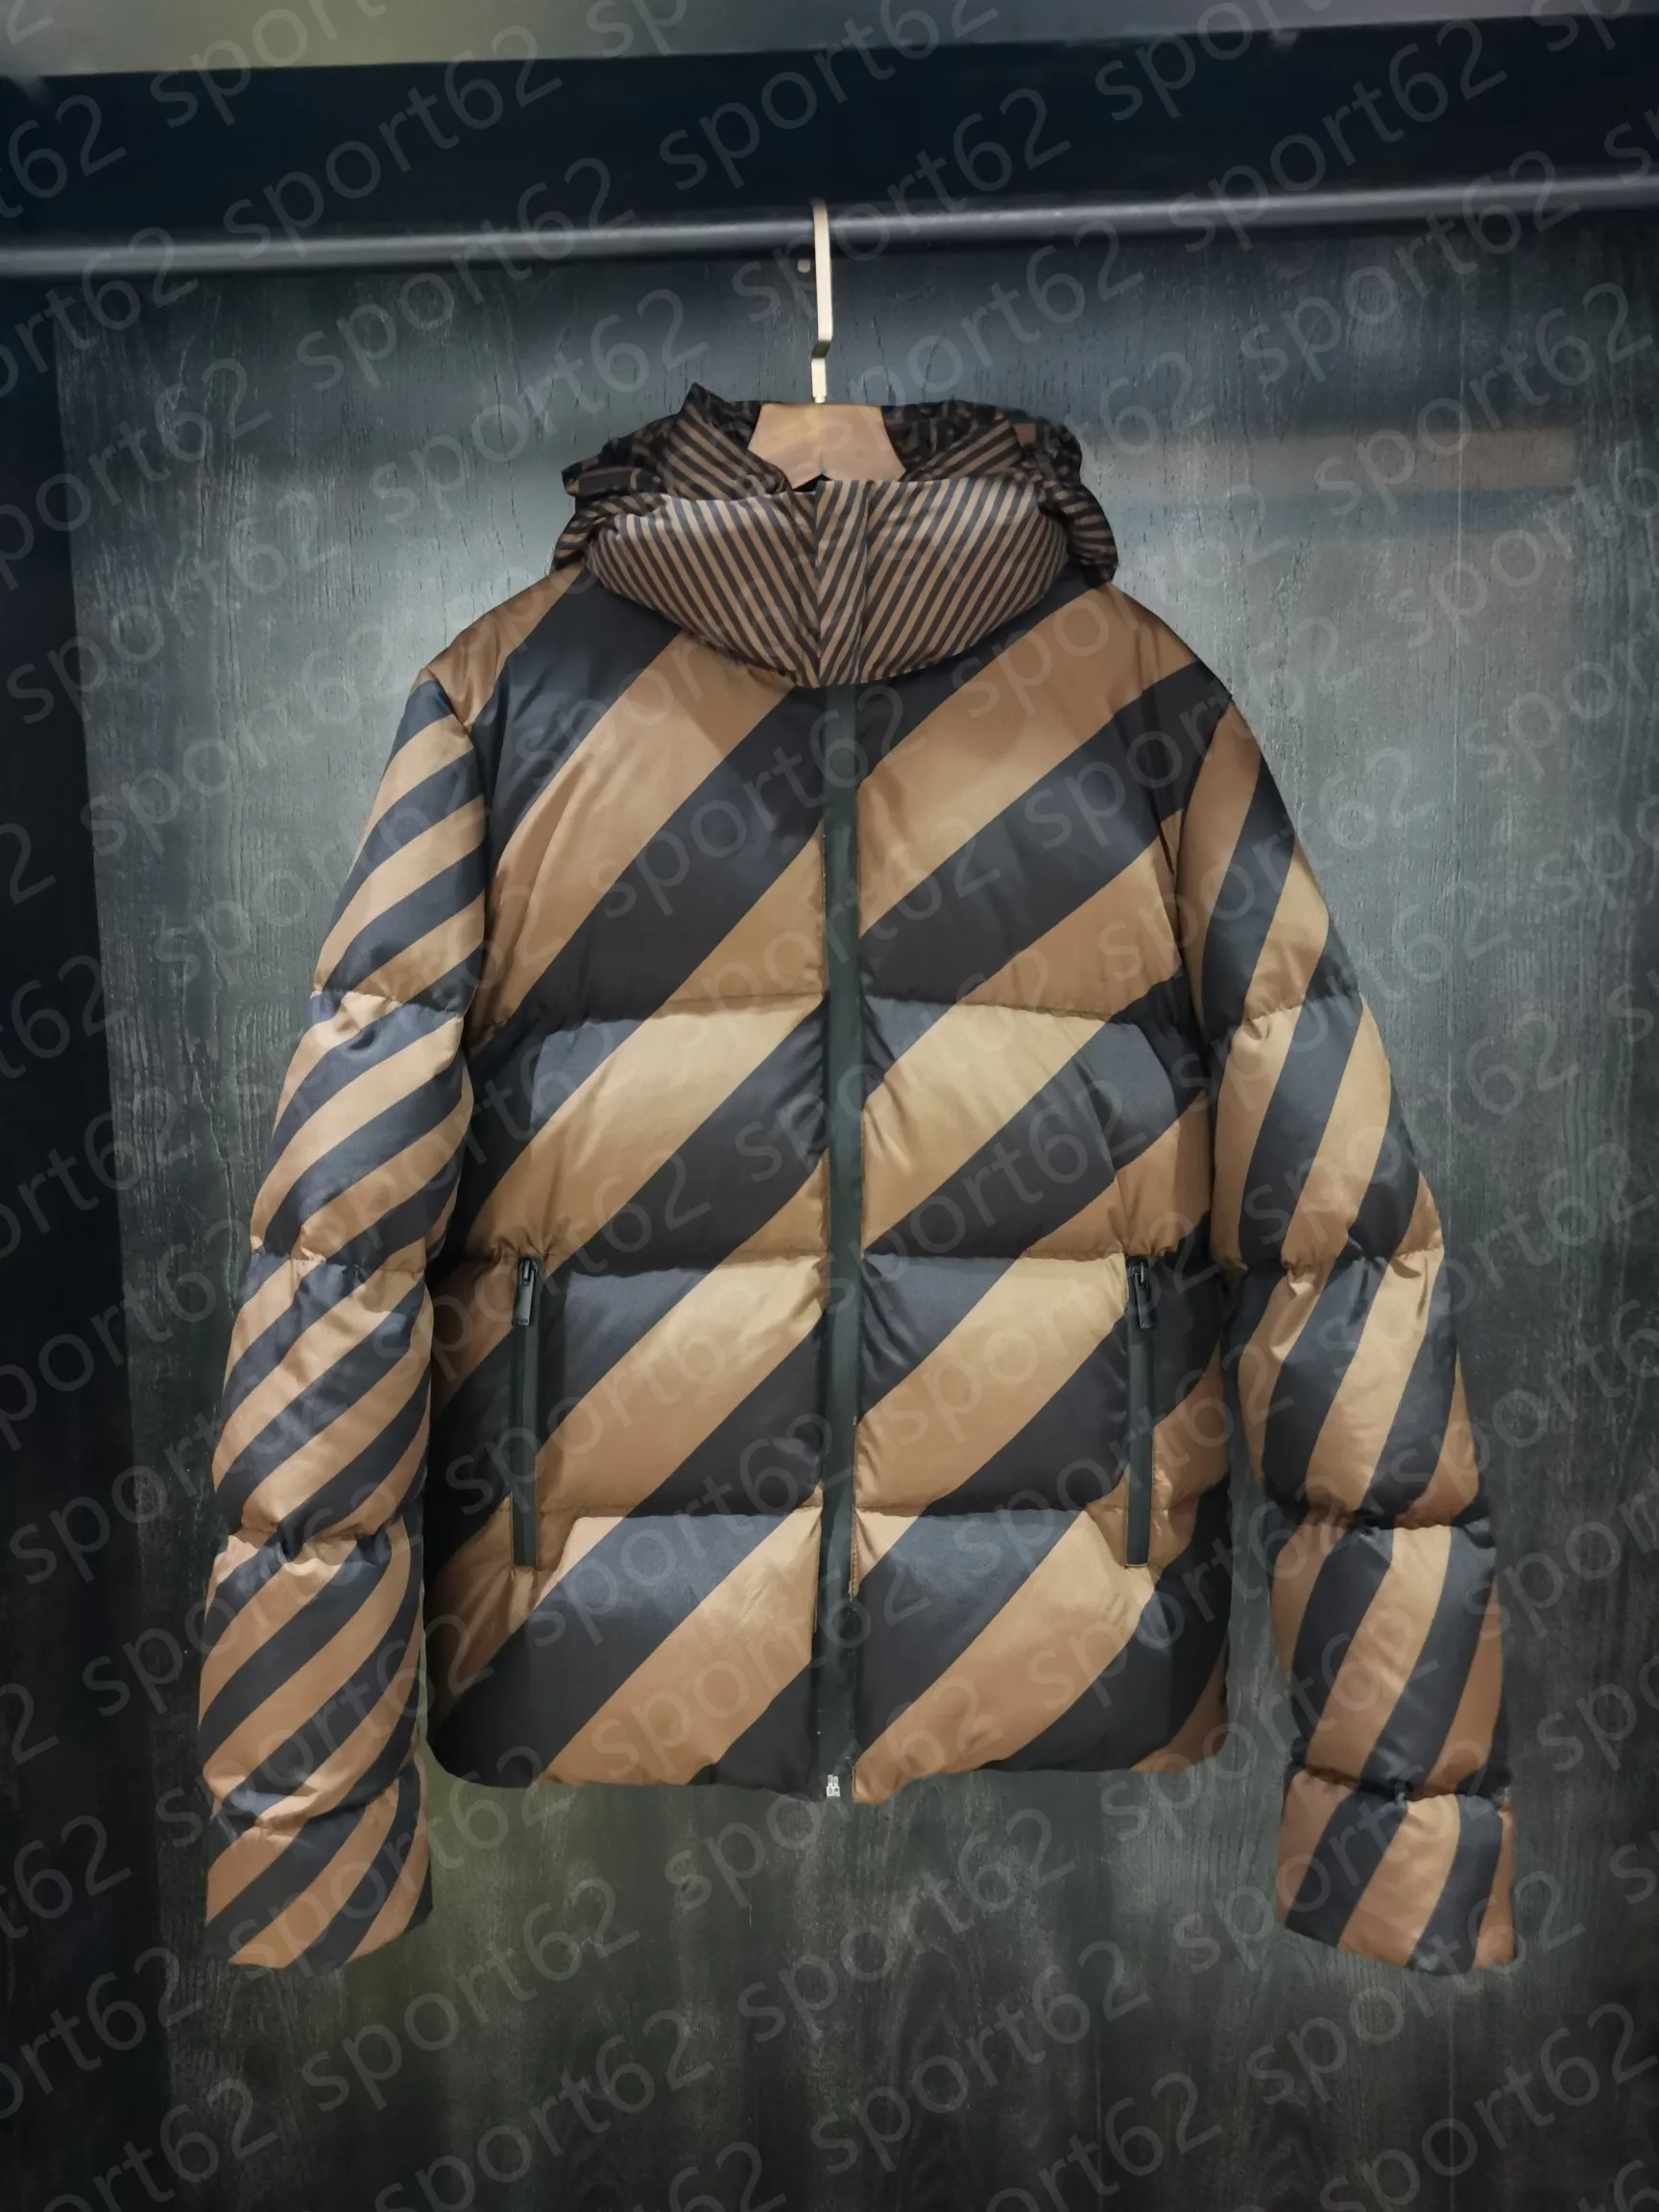 Mens Down Jacket Parkas Beverible Jackets는 따뜻하고 바람이 방해하는 겉옷 코트를 두껍게 유지하여 추운 겨울 코트 봉제 칼라 높이에 저항합니다.